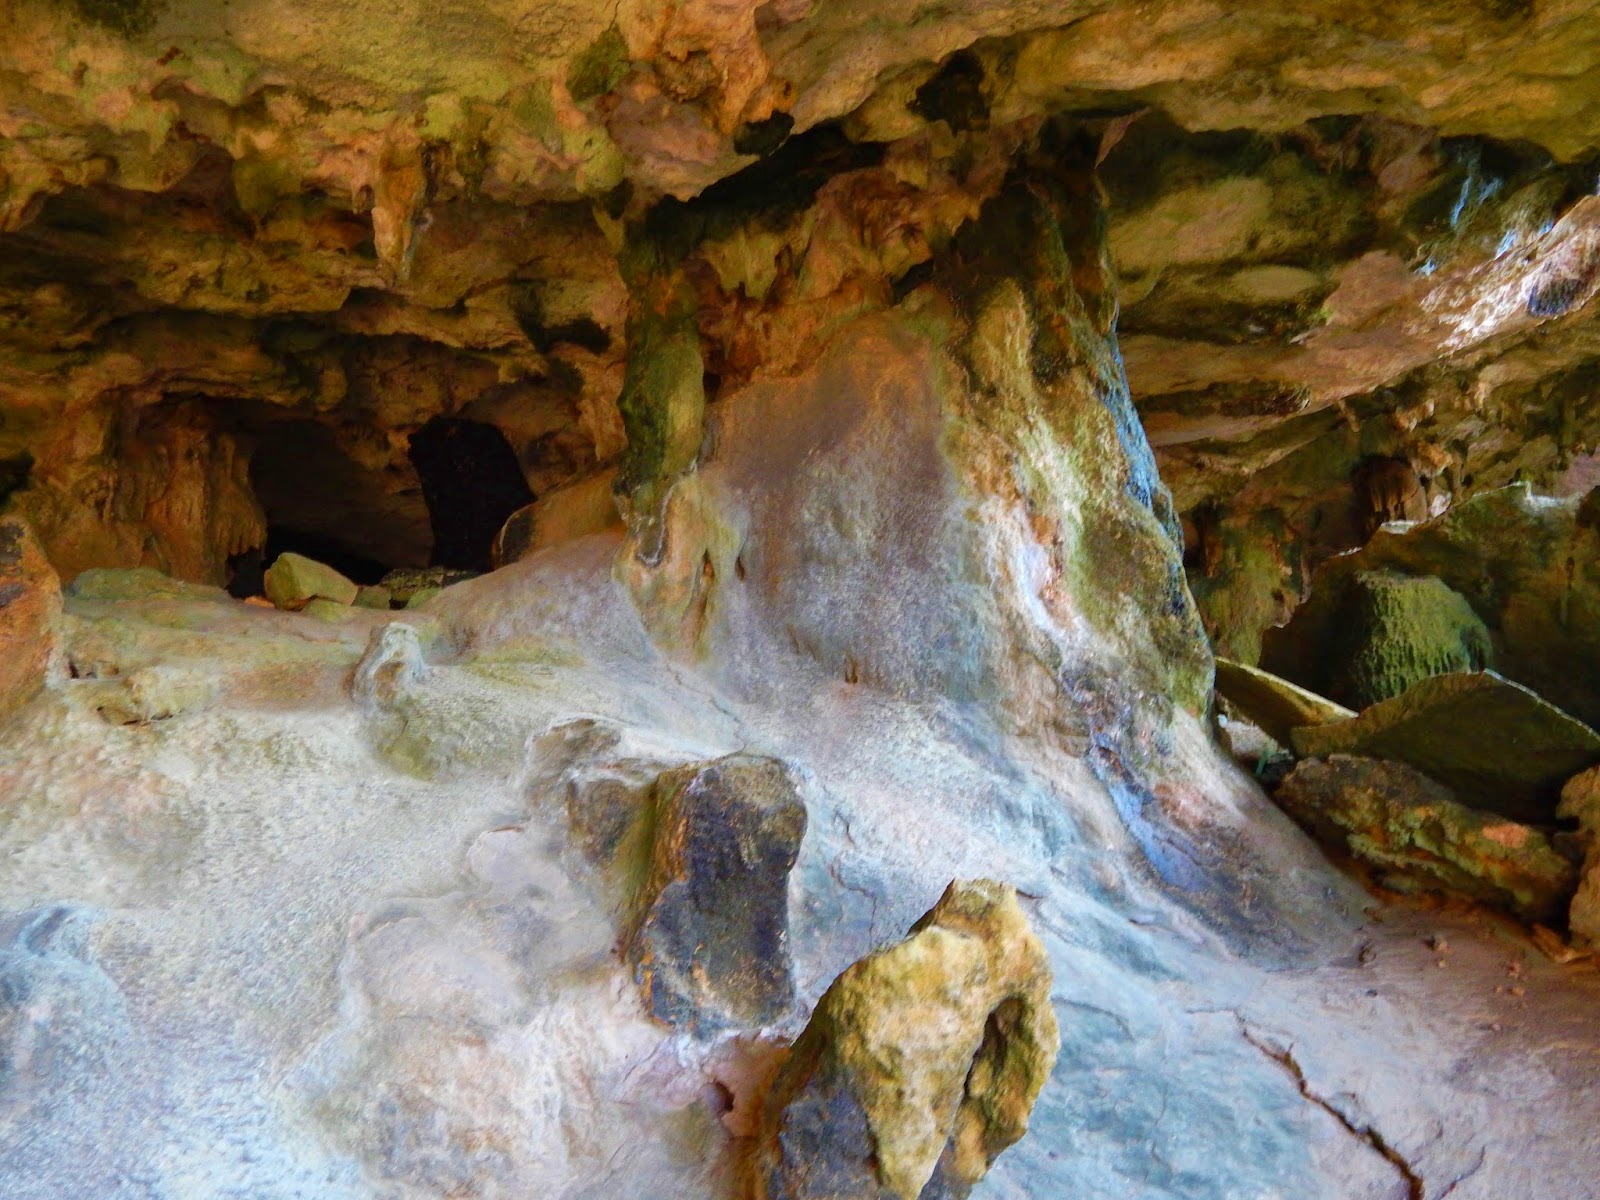 2aufCuracao: In der Höhle